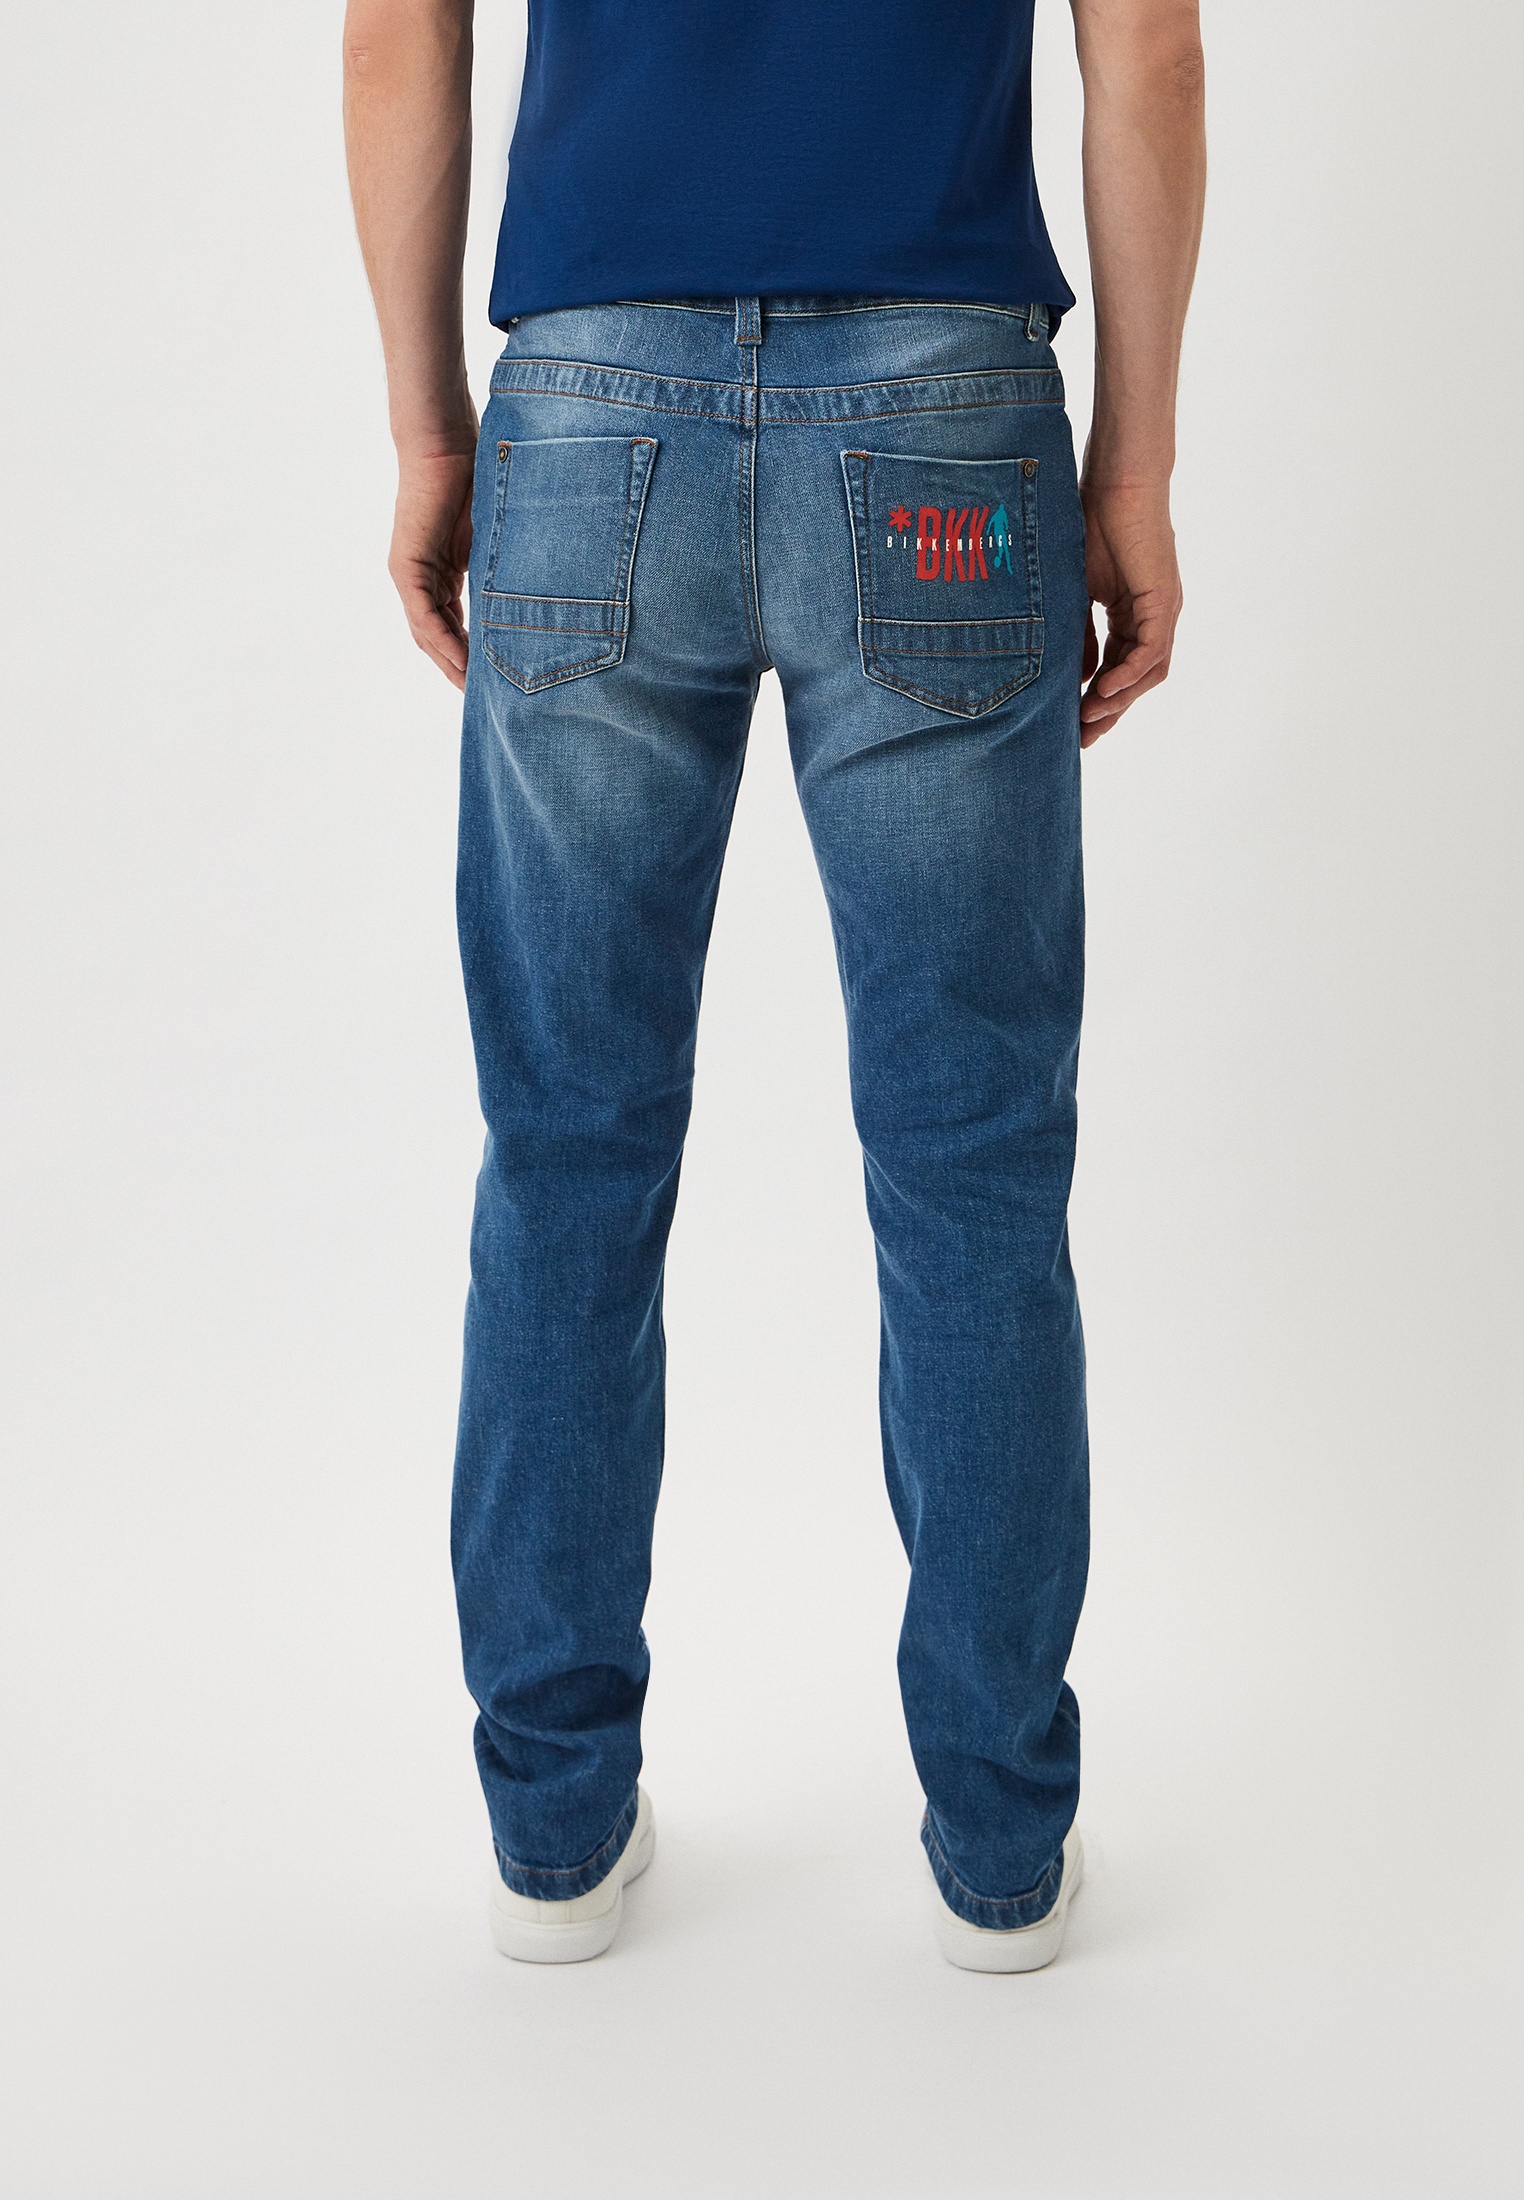 Мужские зауженные джинсы Bikkembergs (Биккембергс) CQ1011XS3976: изображение 7